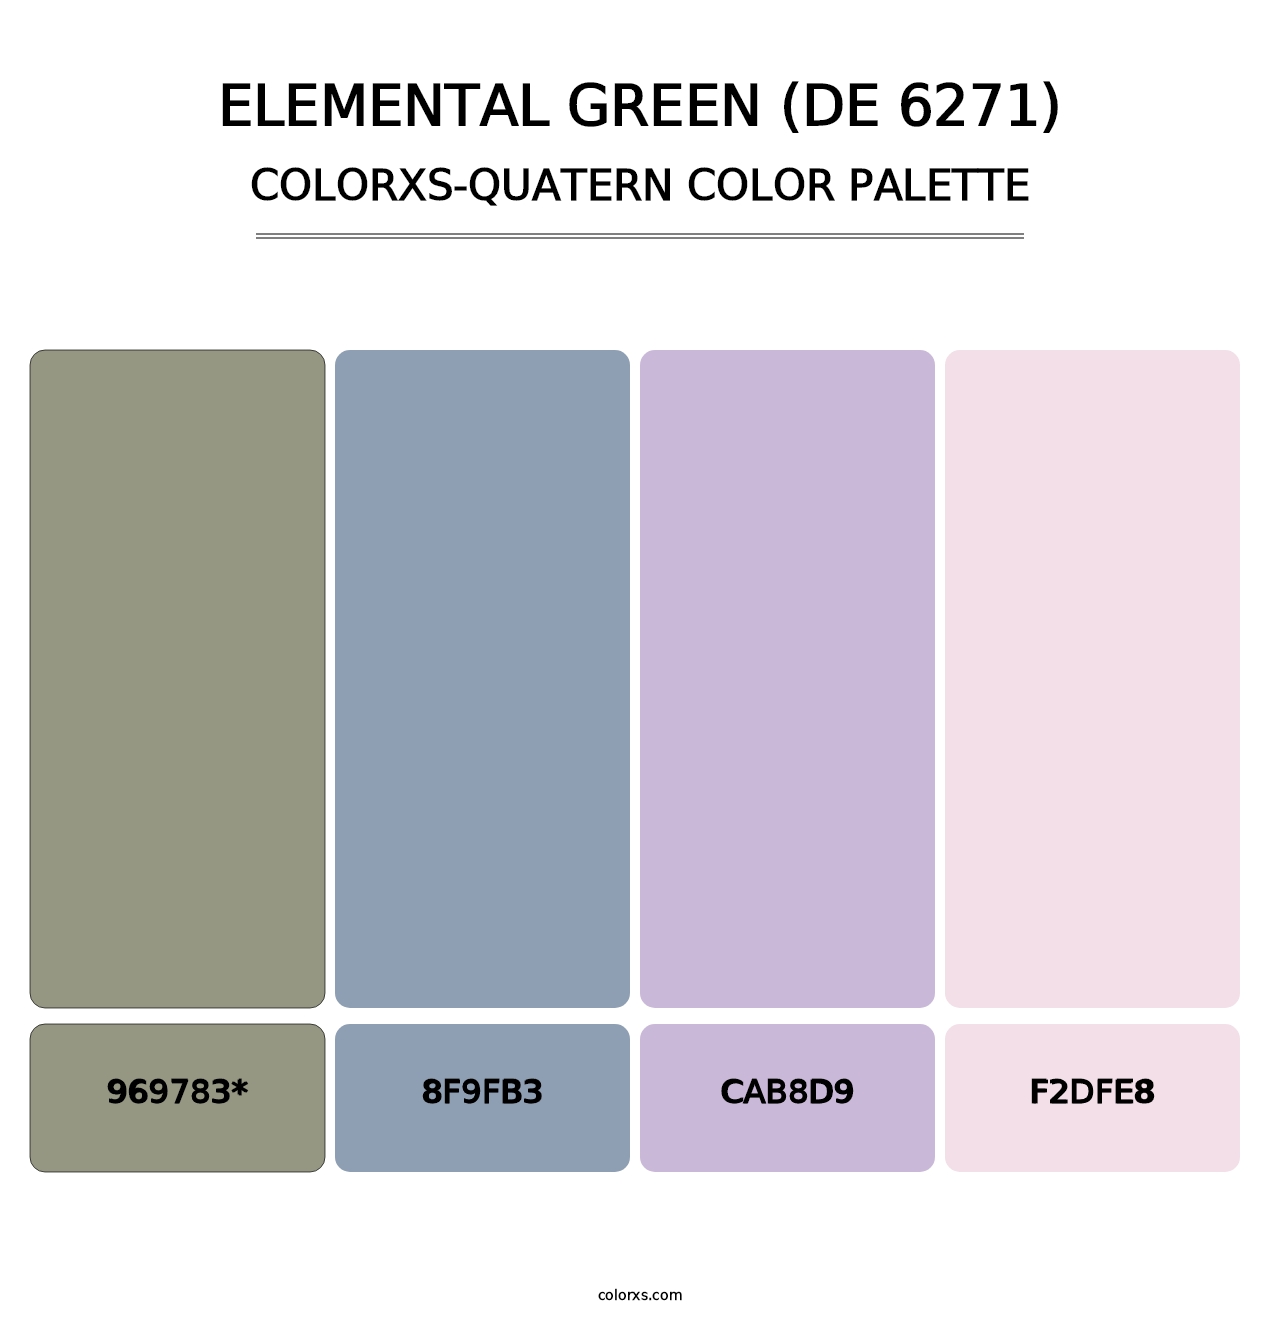 Elemental Green (DE 6271) - Colorxs Quatern Palette